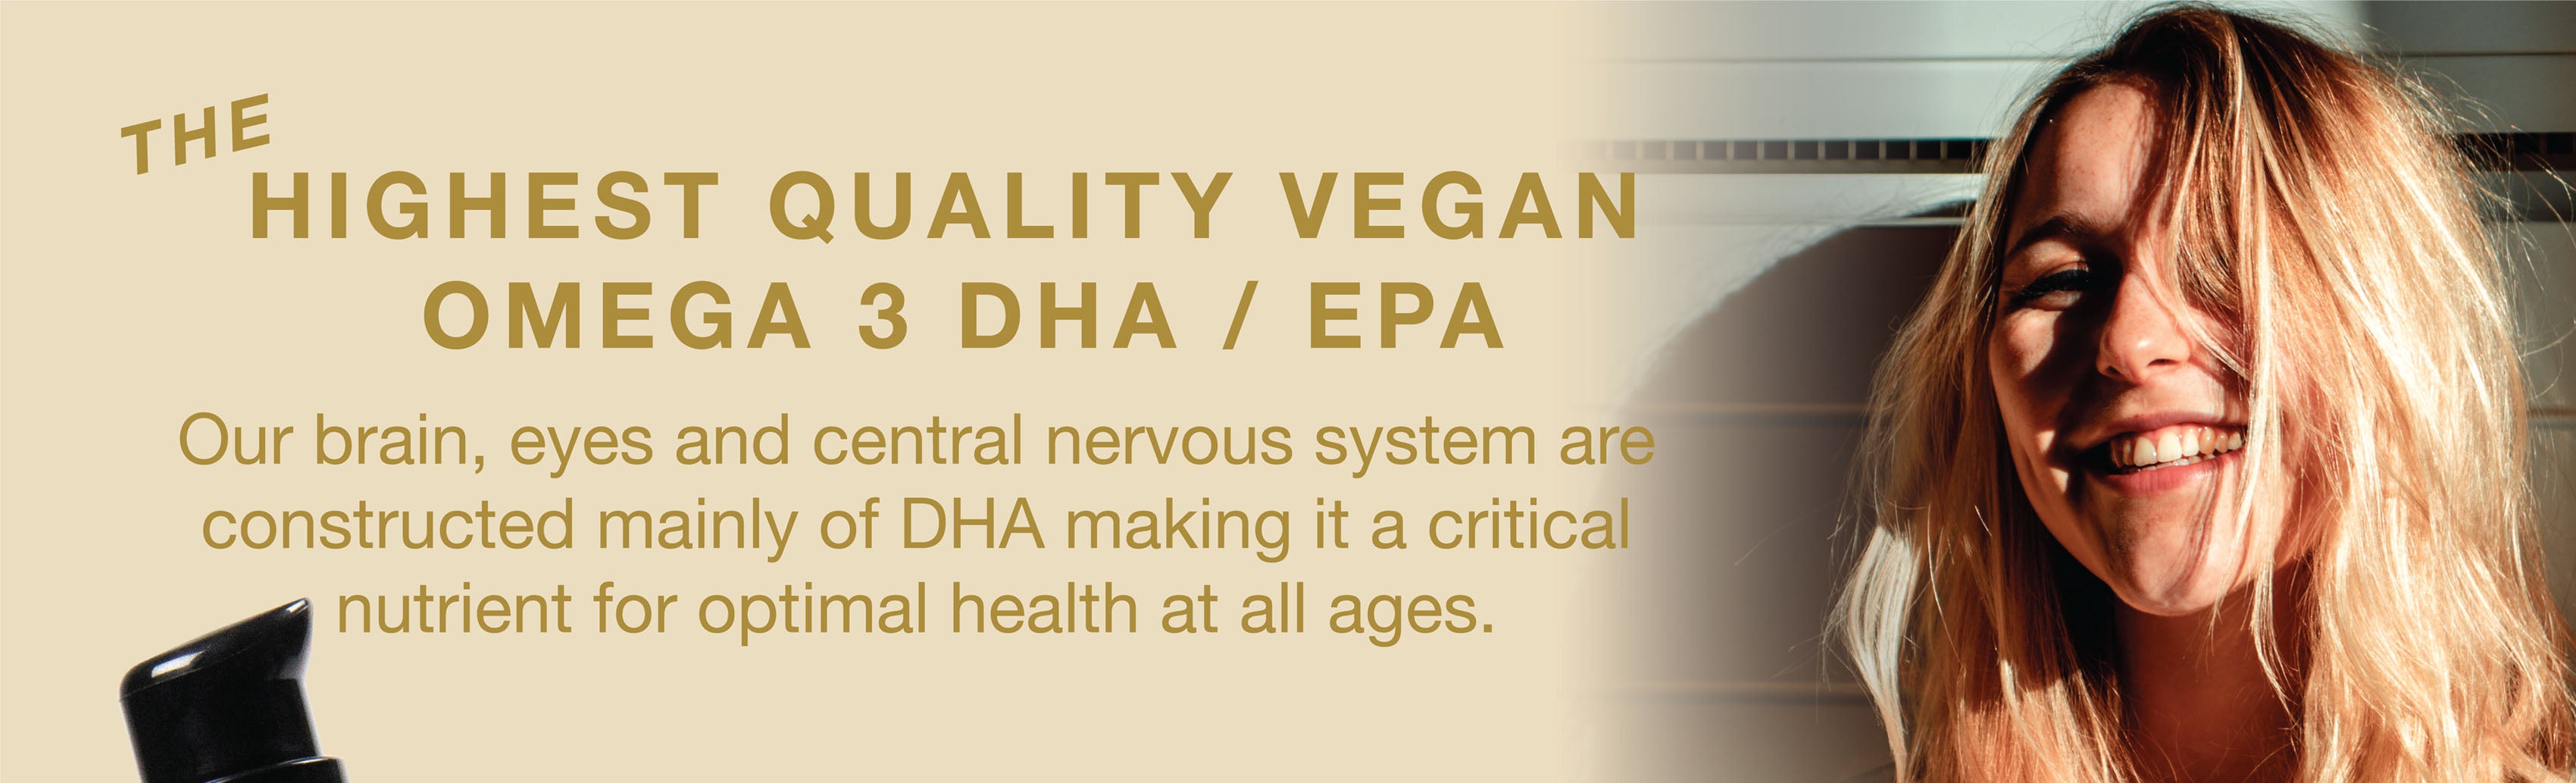 Omega 3 DHA/EPA vegano de la más alta calidad para nuestro cerebro, ojos y sistema nervioso central.